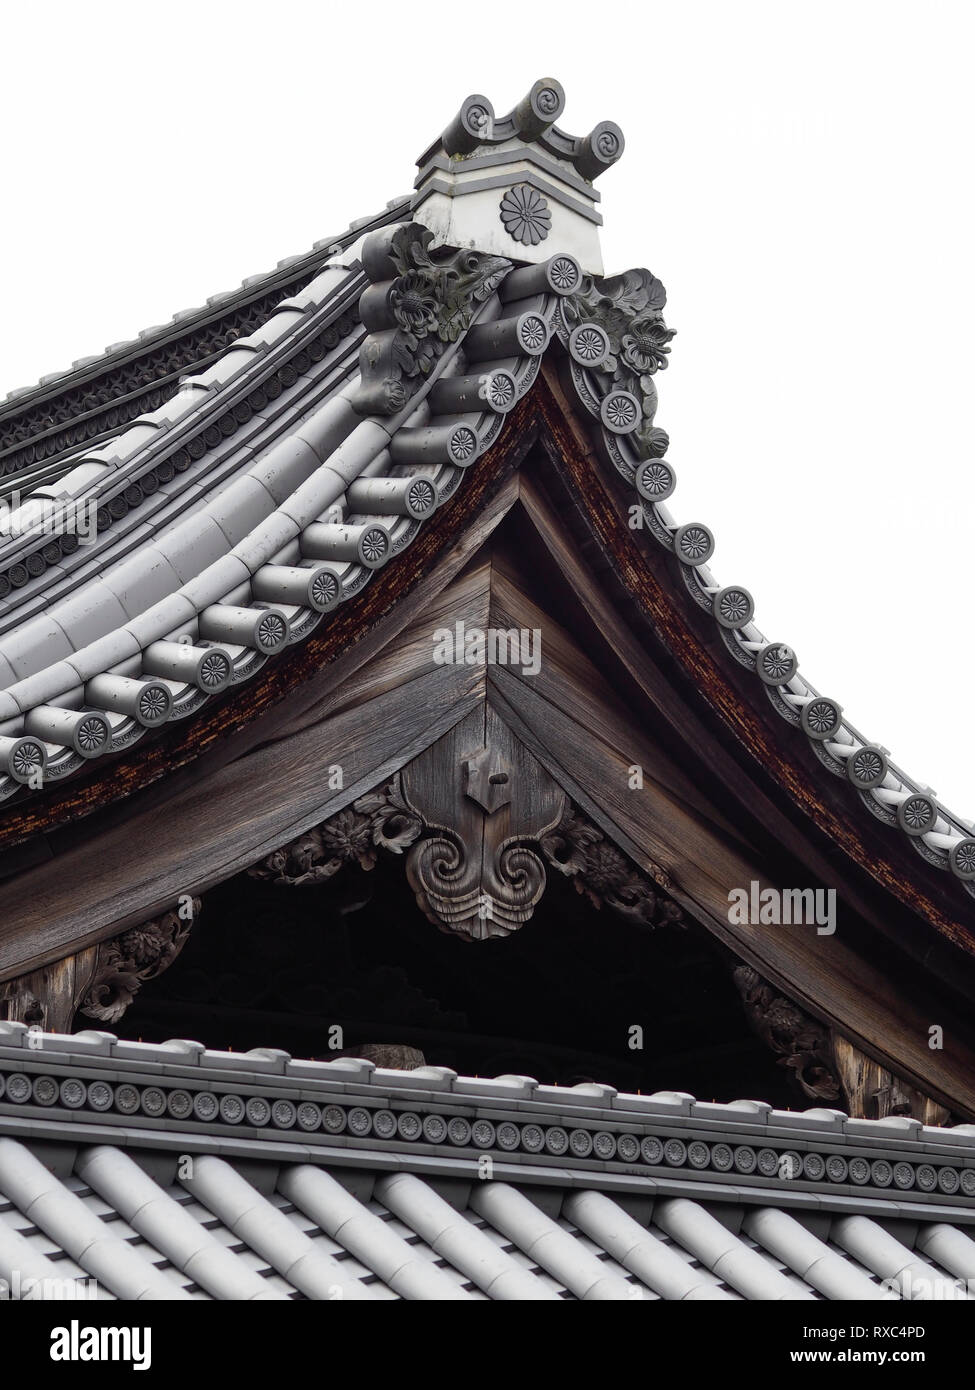 Kyoto, Japan - 15 Okt 2018: reiche Ornamentik und architektonischen Details eines japanischen Pagodendach zu einem Buddhistischen Heiligtum Stockfoto